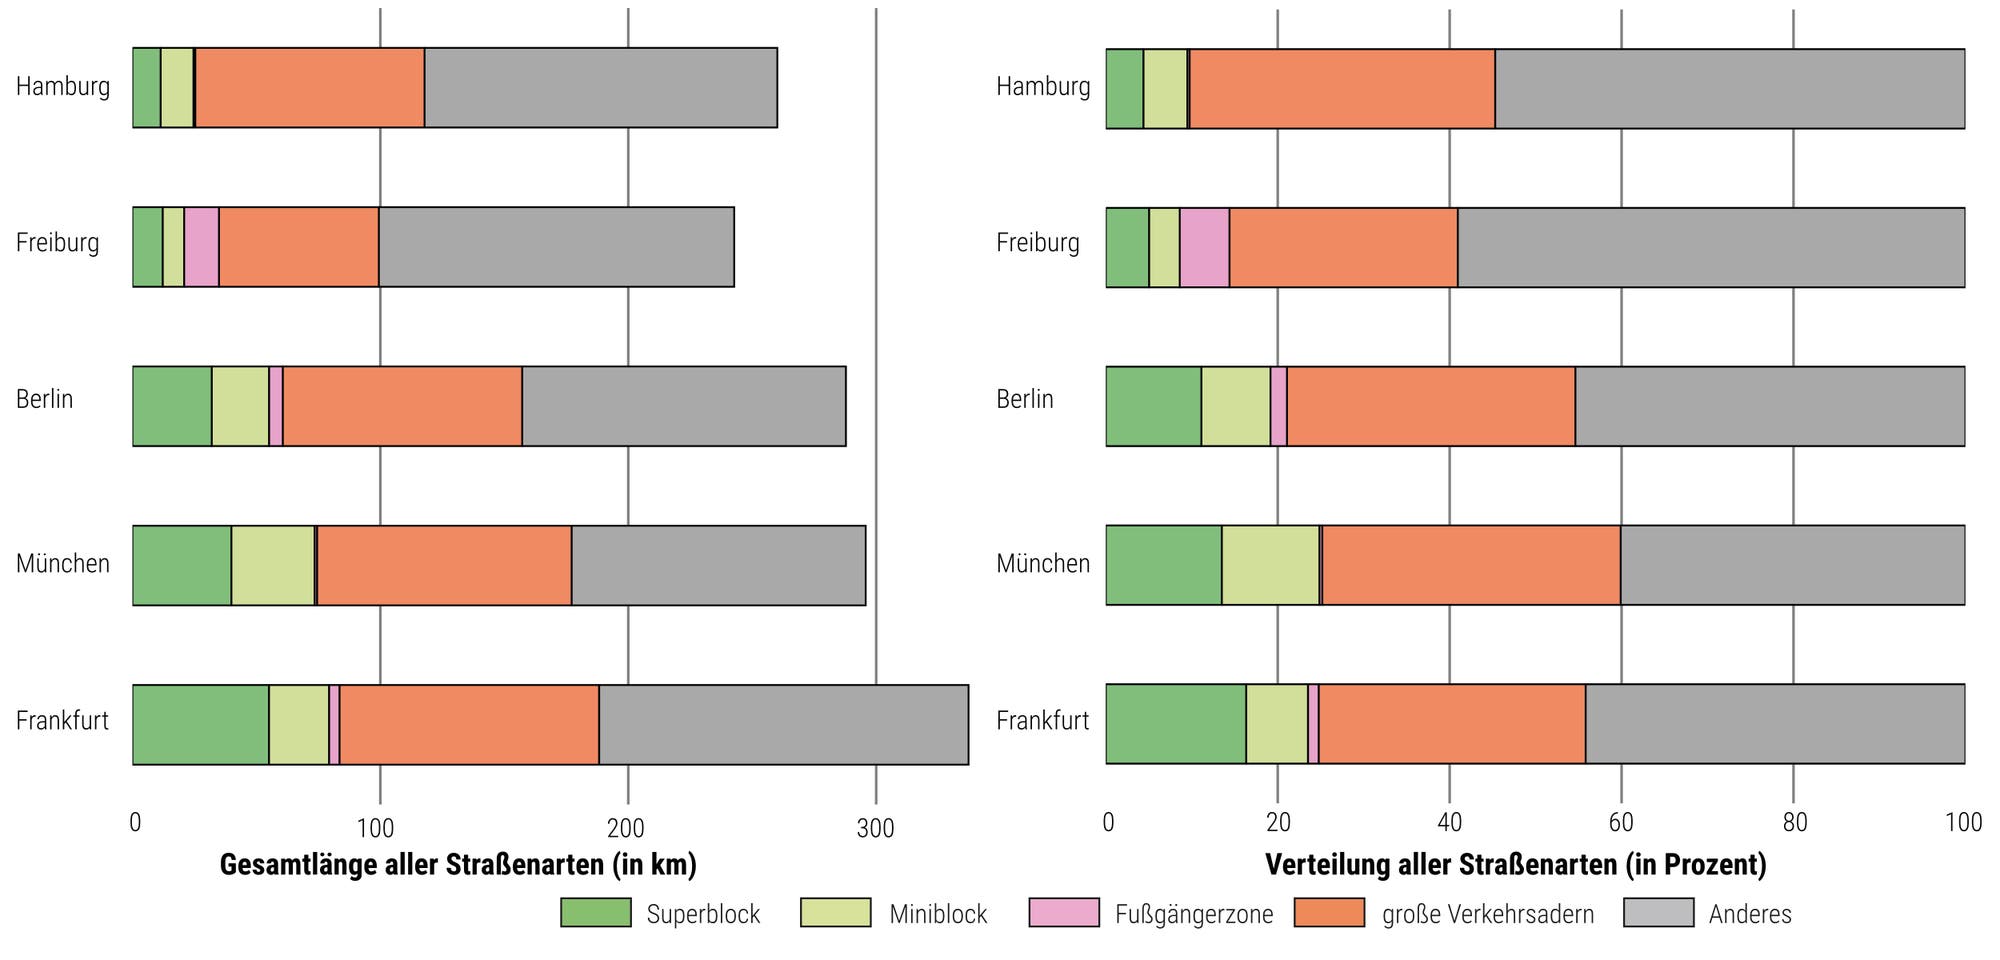 Verteilung der Straßenarten in fünf deutschen Städten